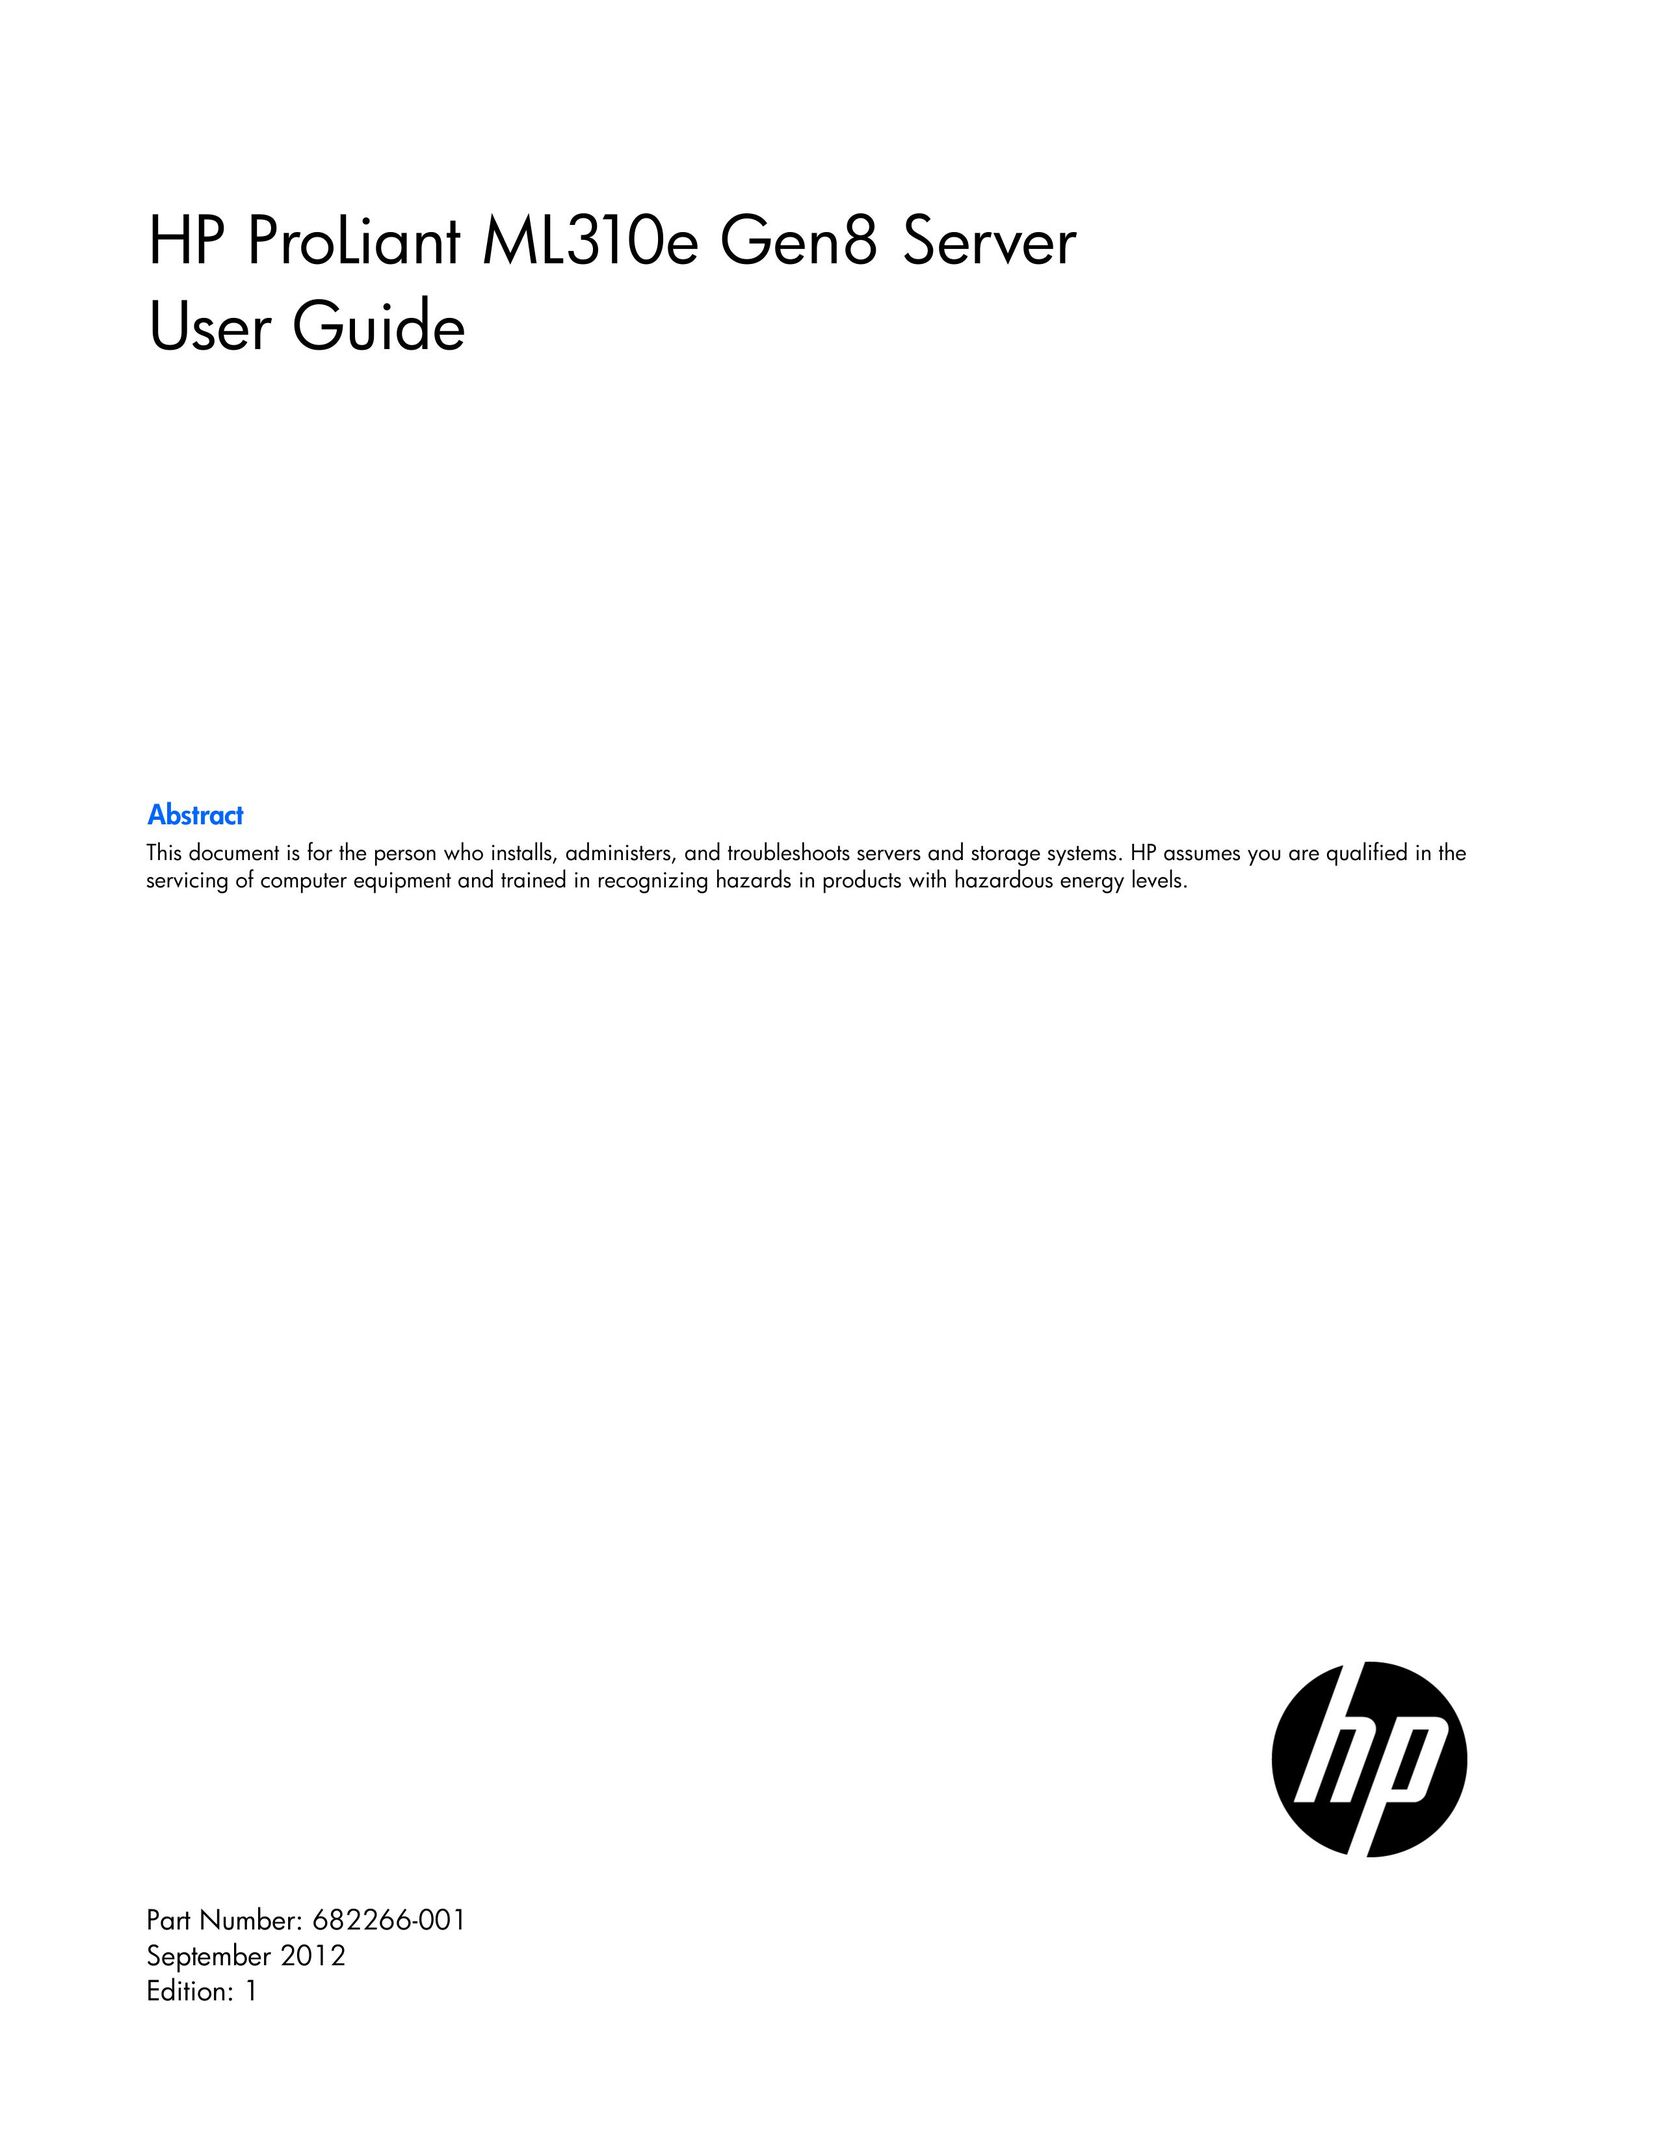 HP (Hewlett-Packard) 674786-001 Server User Manual